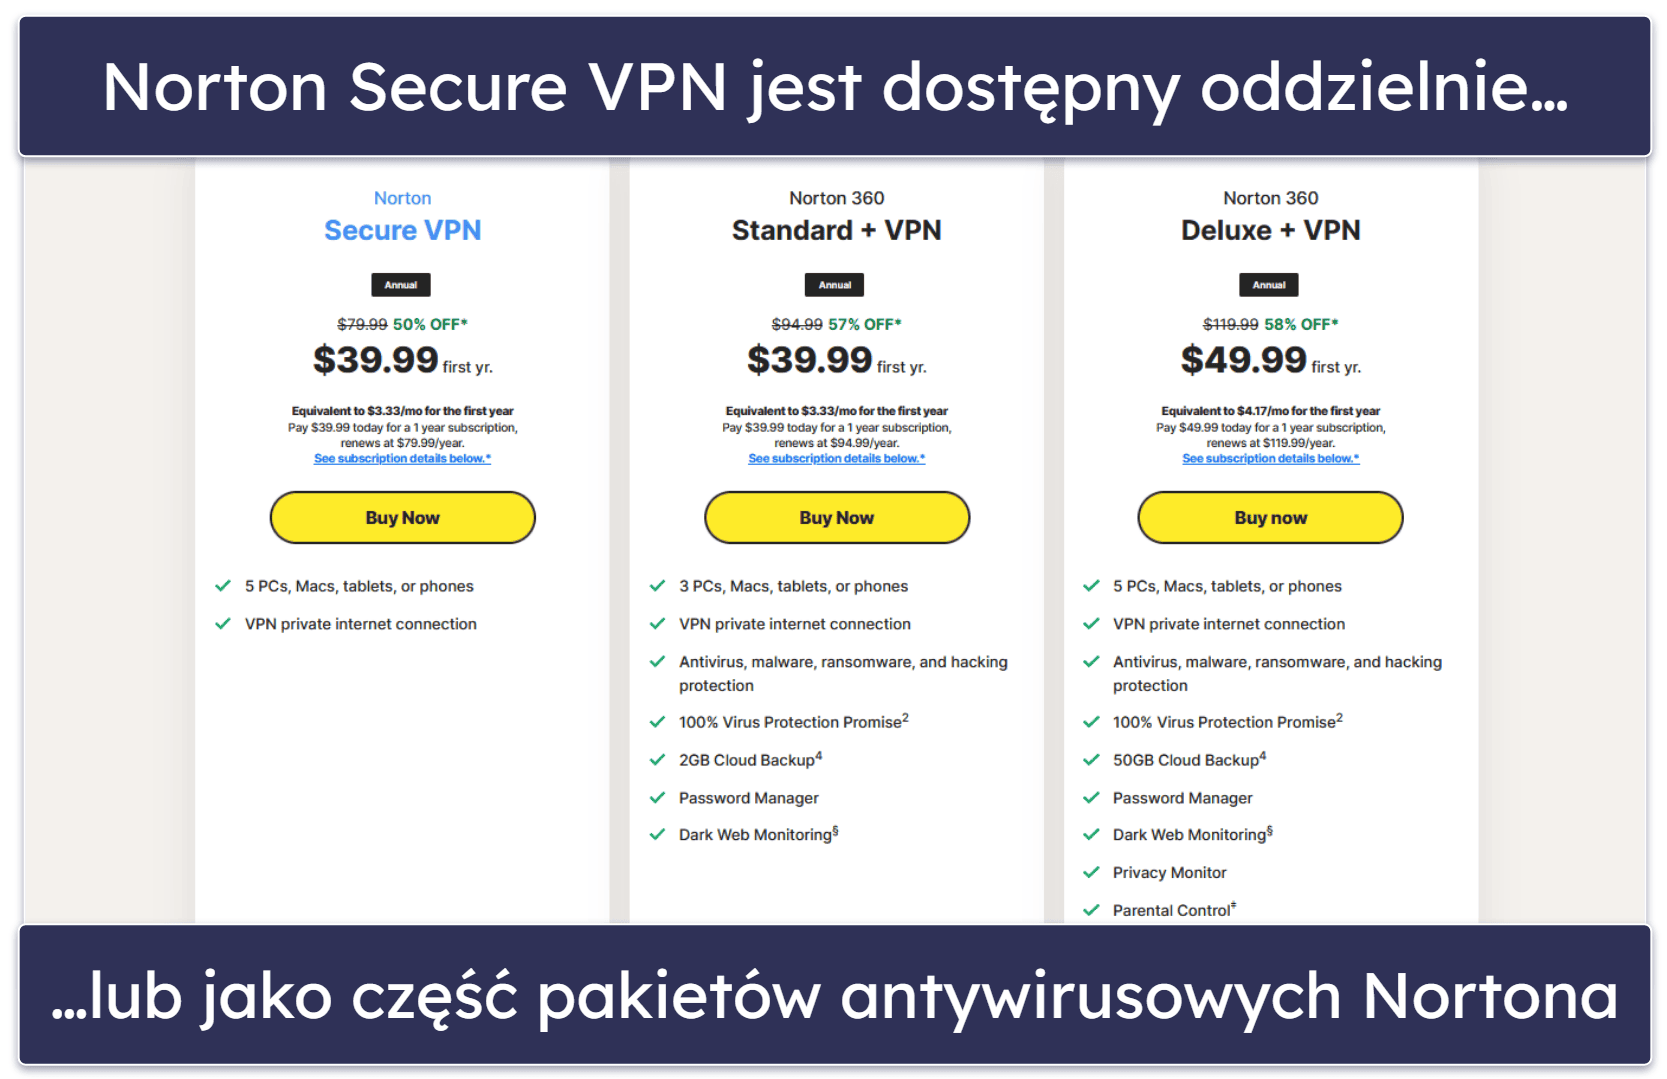 Plany i ceny Norton Secure VPN